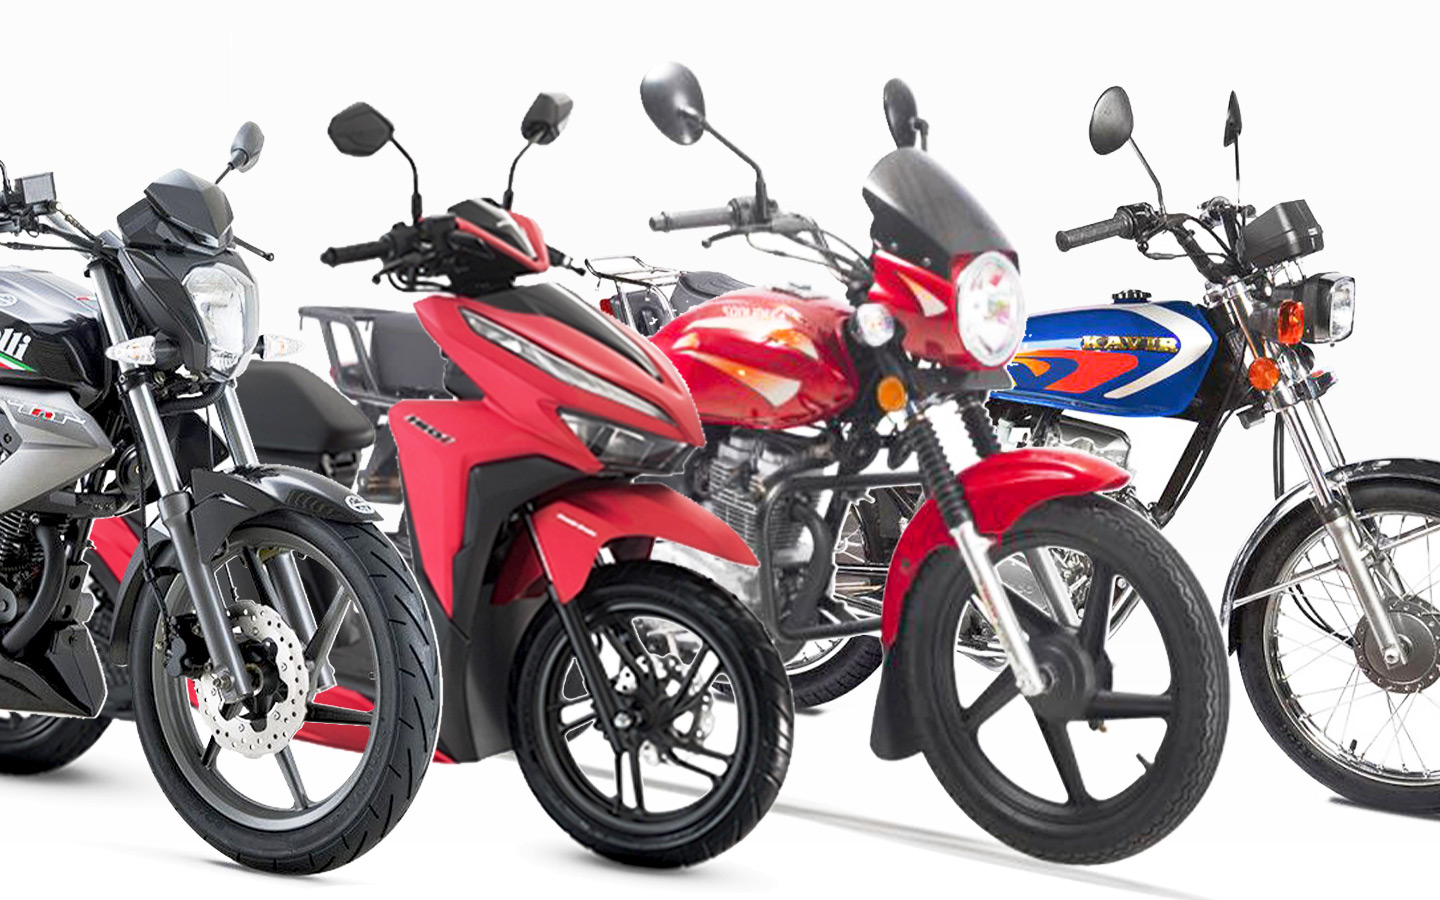 جدیدترین قیمت انواع موتورسیکلت داخلی و خارجی در بازار+ جدول